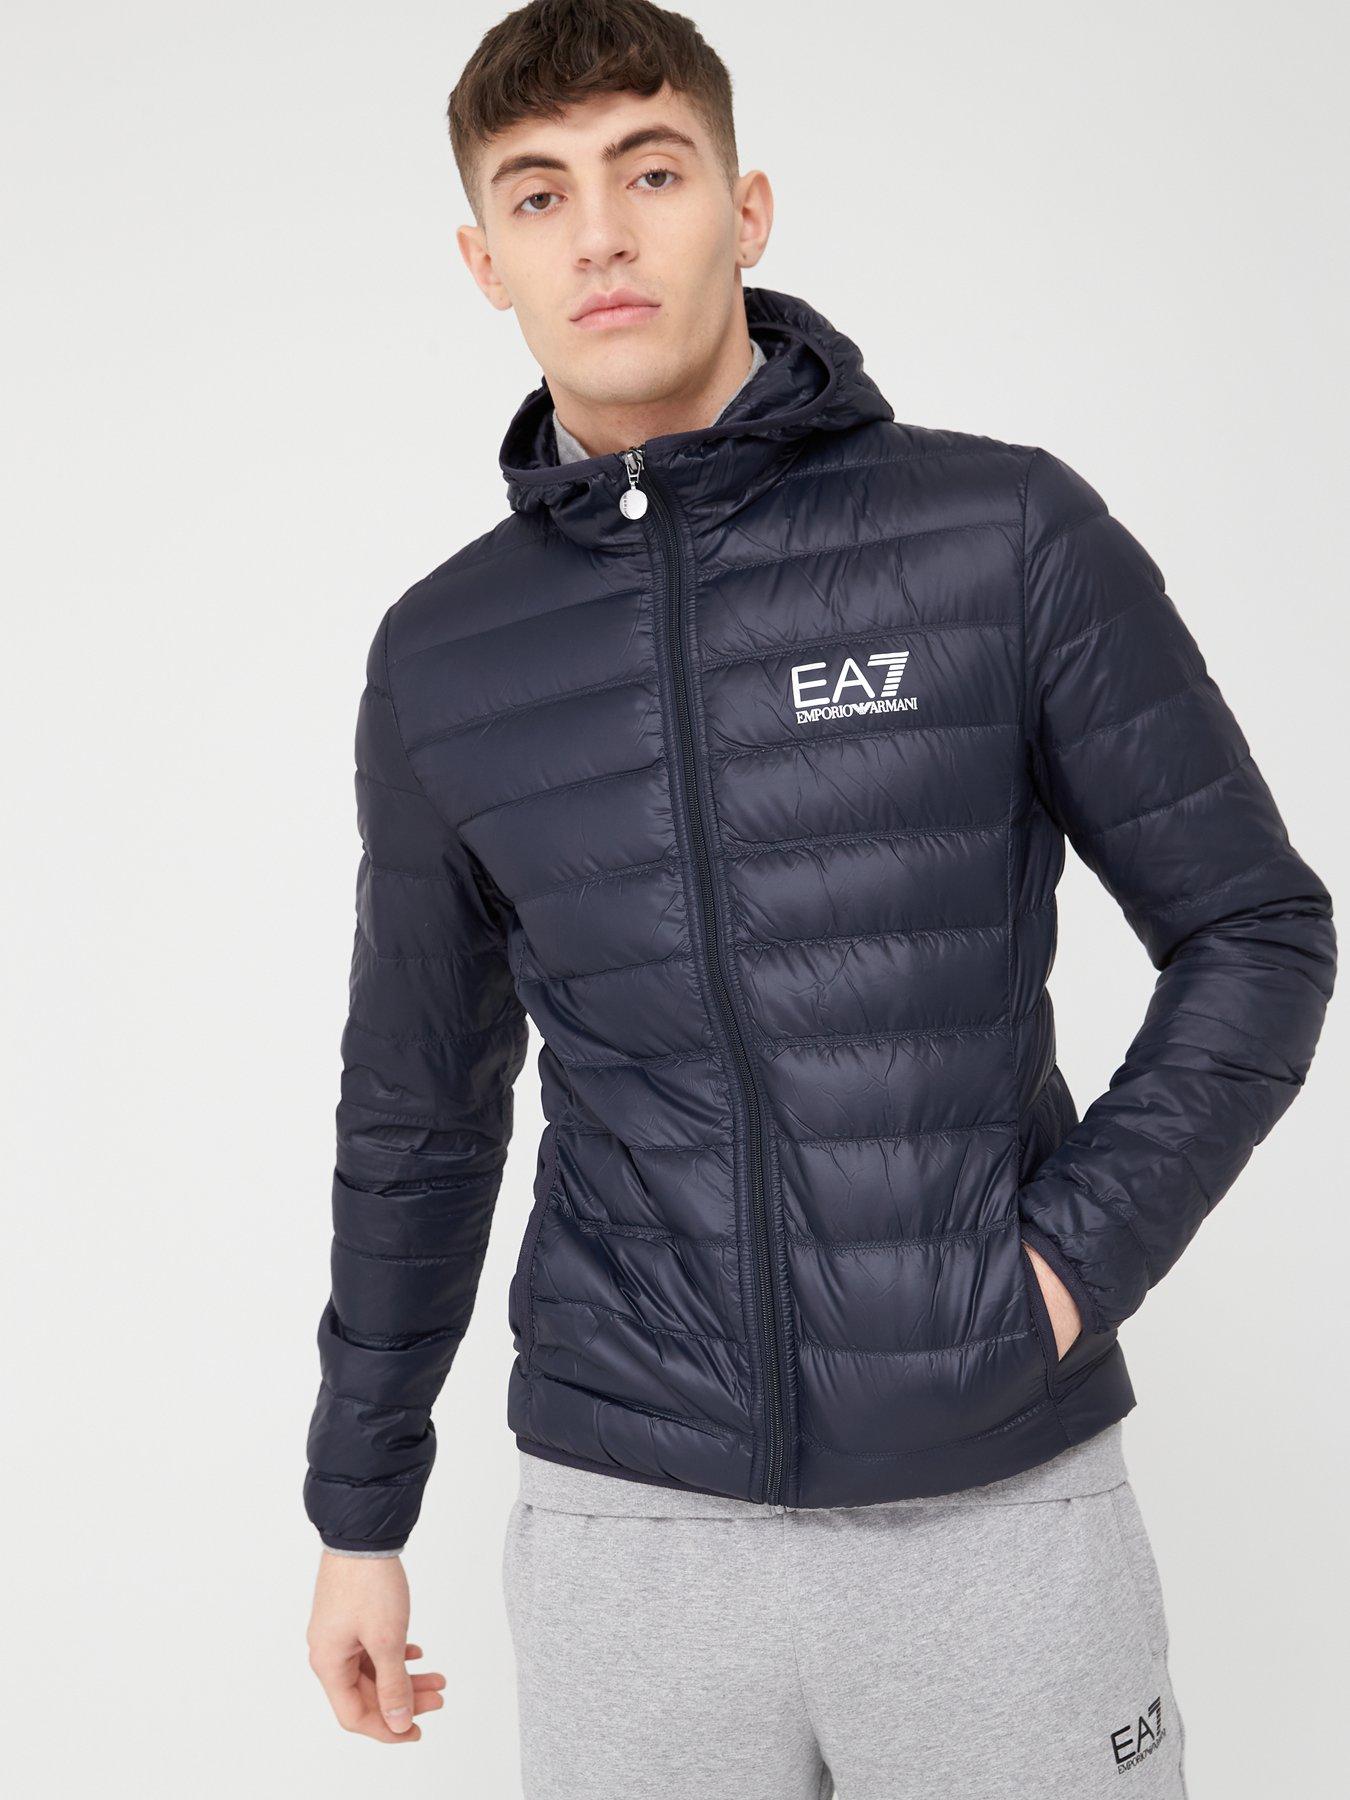 Regular Size L Emporio Armani Ea7 Coats, Jackets & Vests for Men